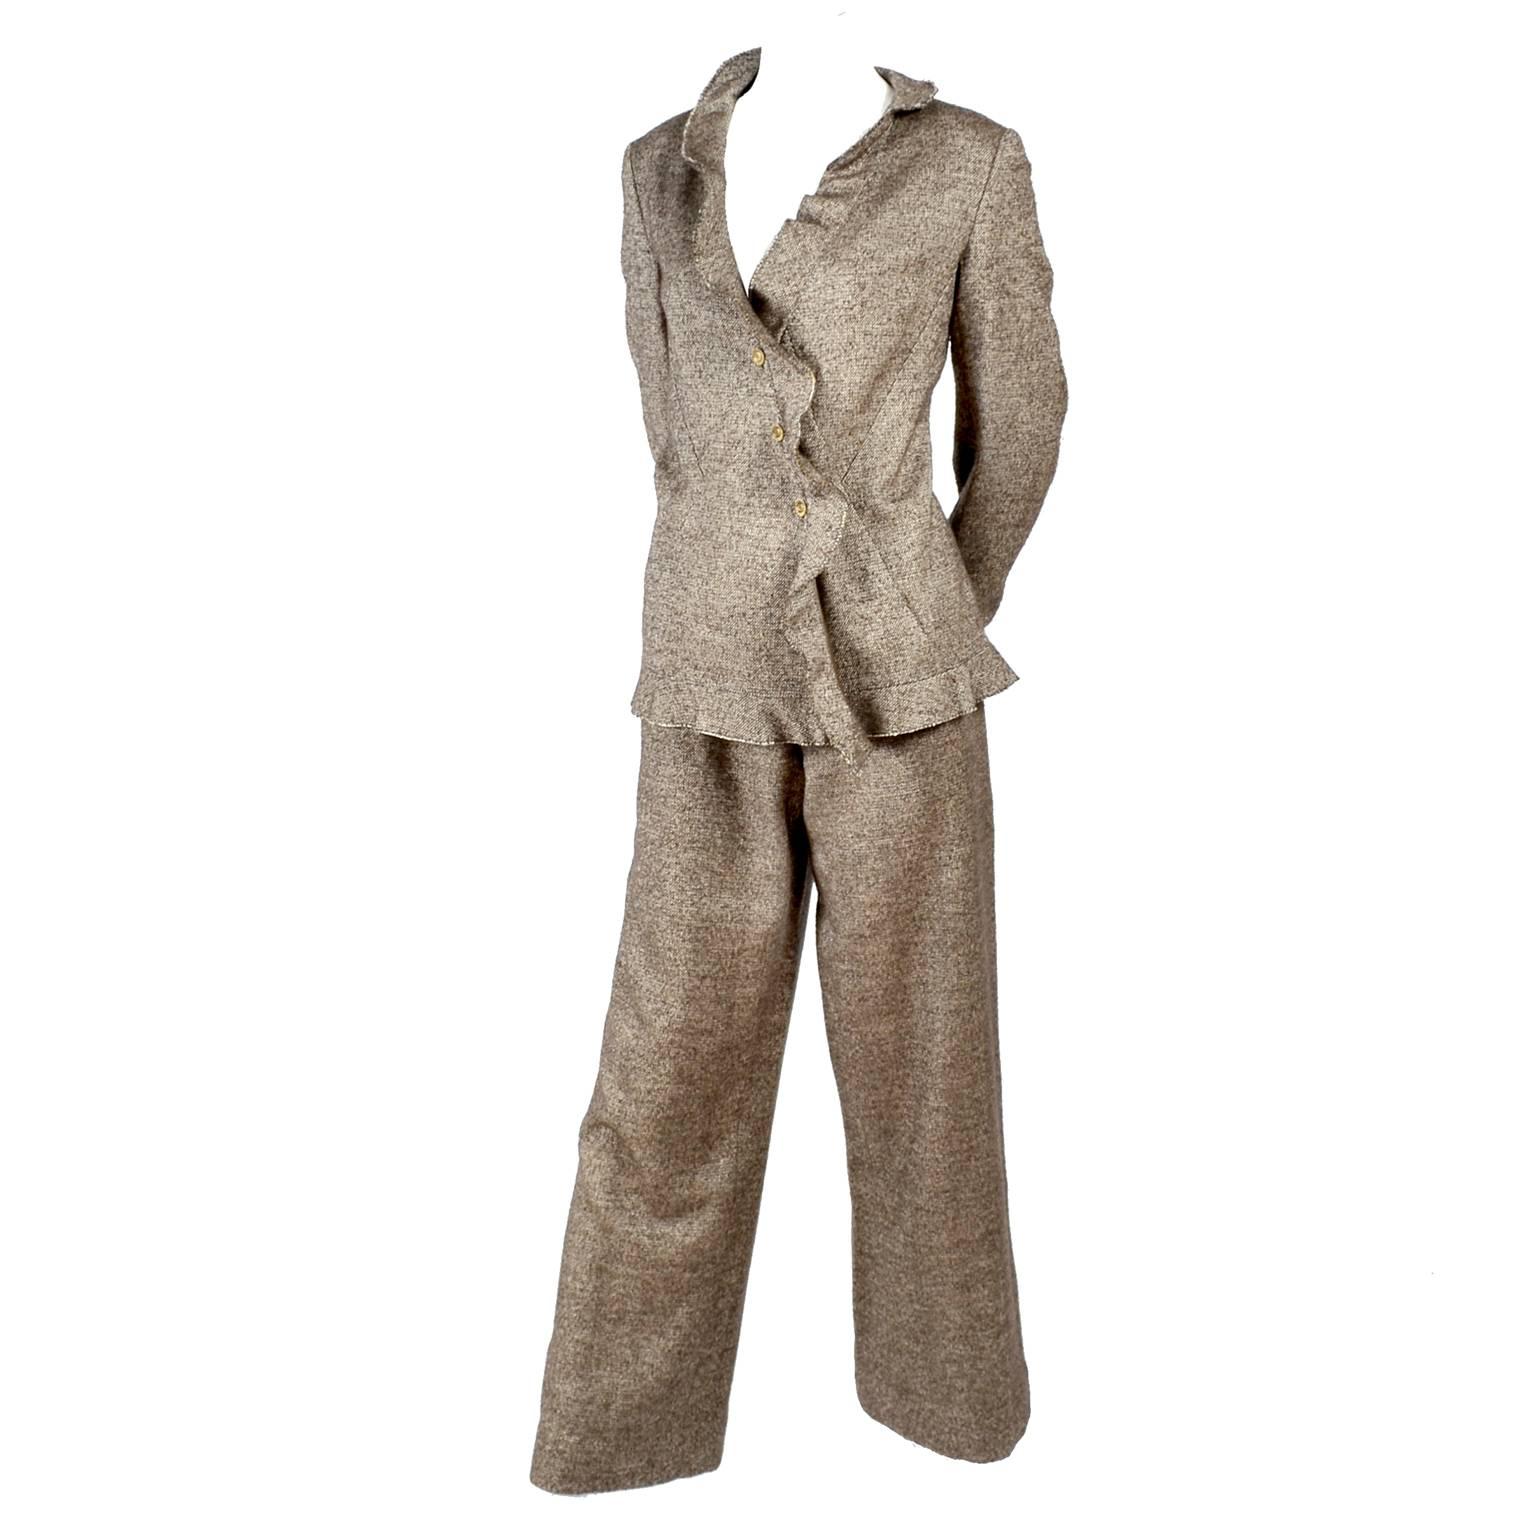 Chanel Jacket & Pants Suit From Autumn 2005 in Silk Alpaca Wool Blend w Ruffles